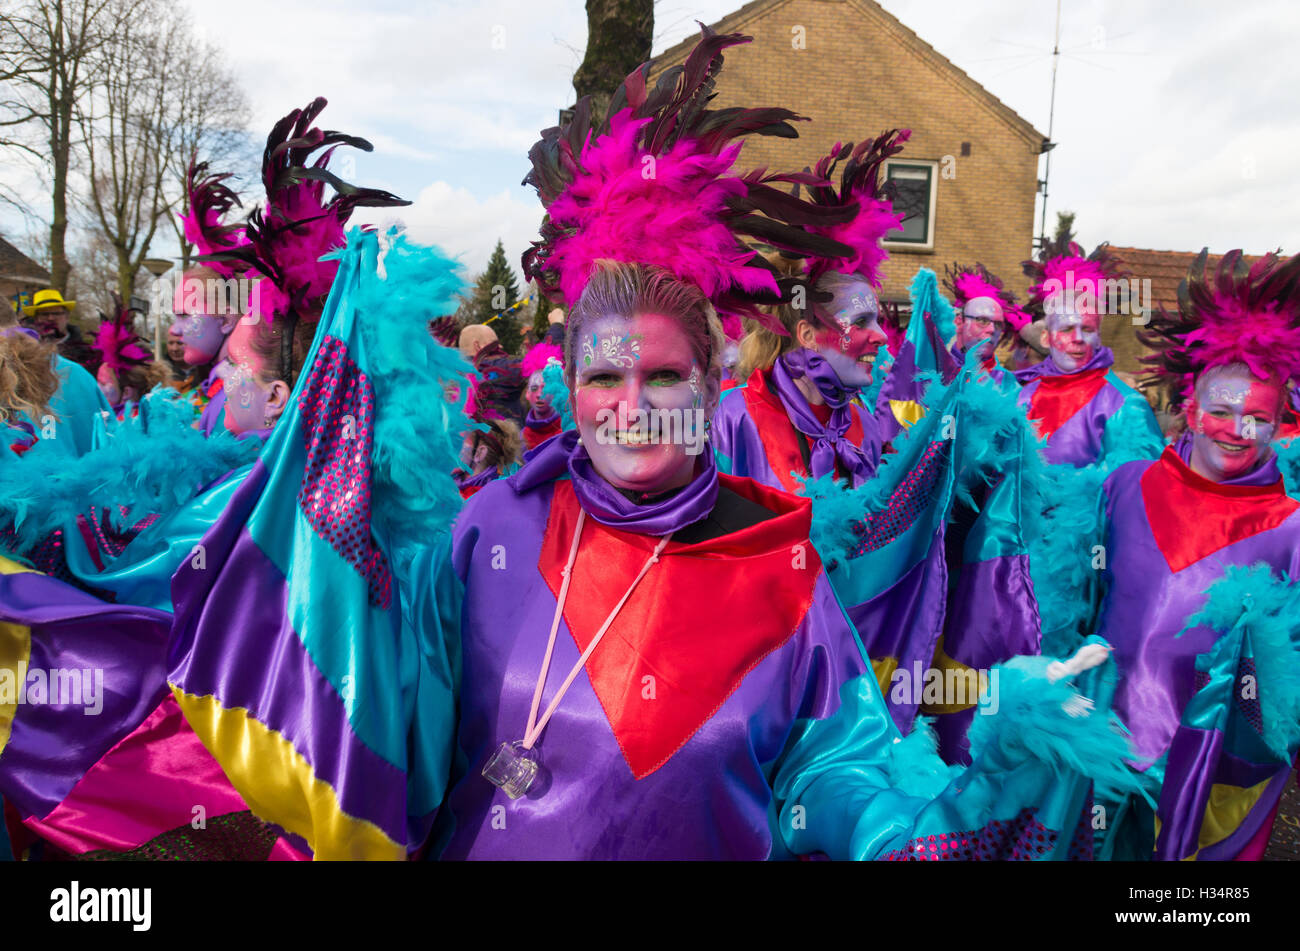 OLDENZAAL, Pays-Bas - 7 février, 2016 : personne inconnue dans drôle robe carnaval défilé du carnaval au cours de l'assemblée annuelle Banque D'Images